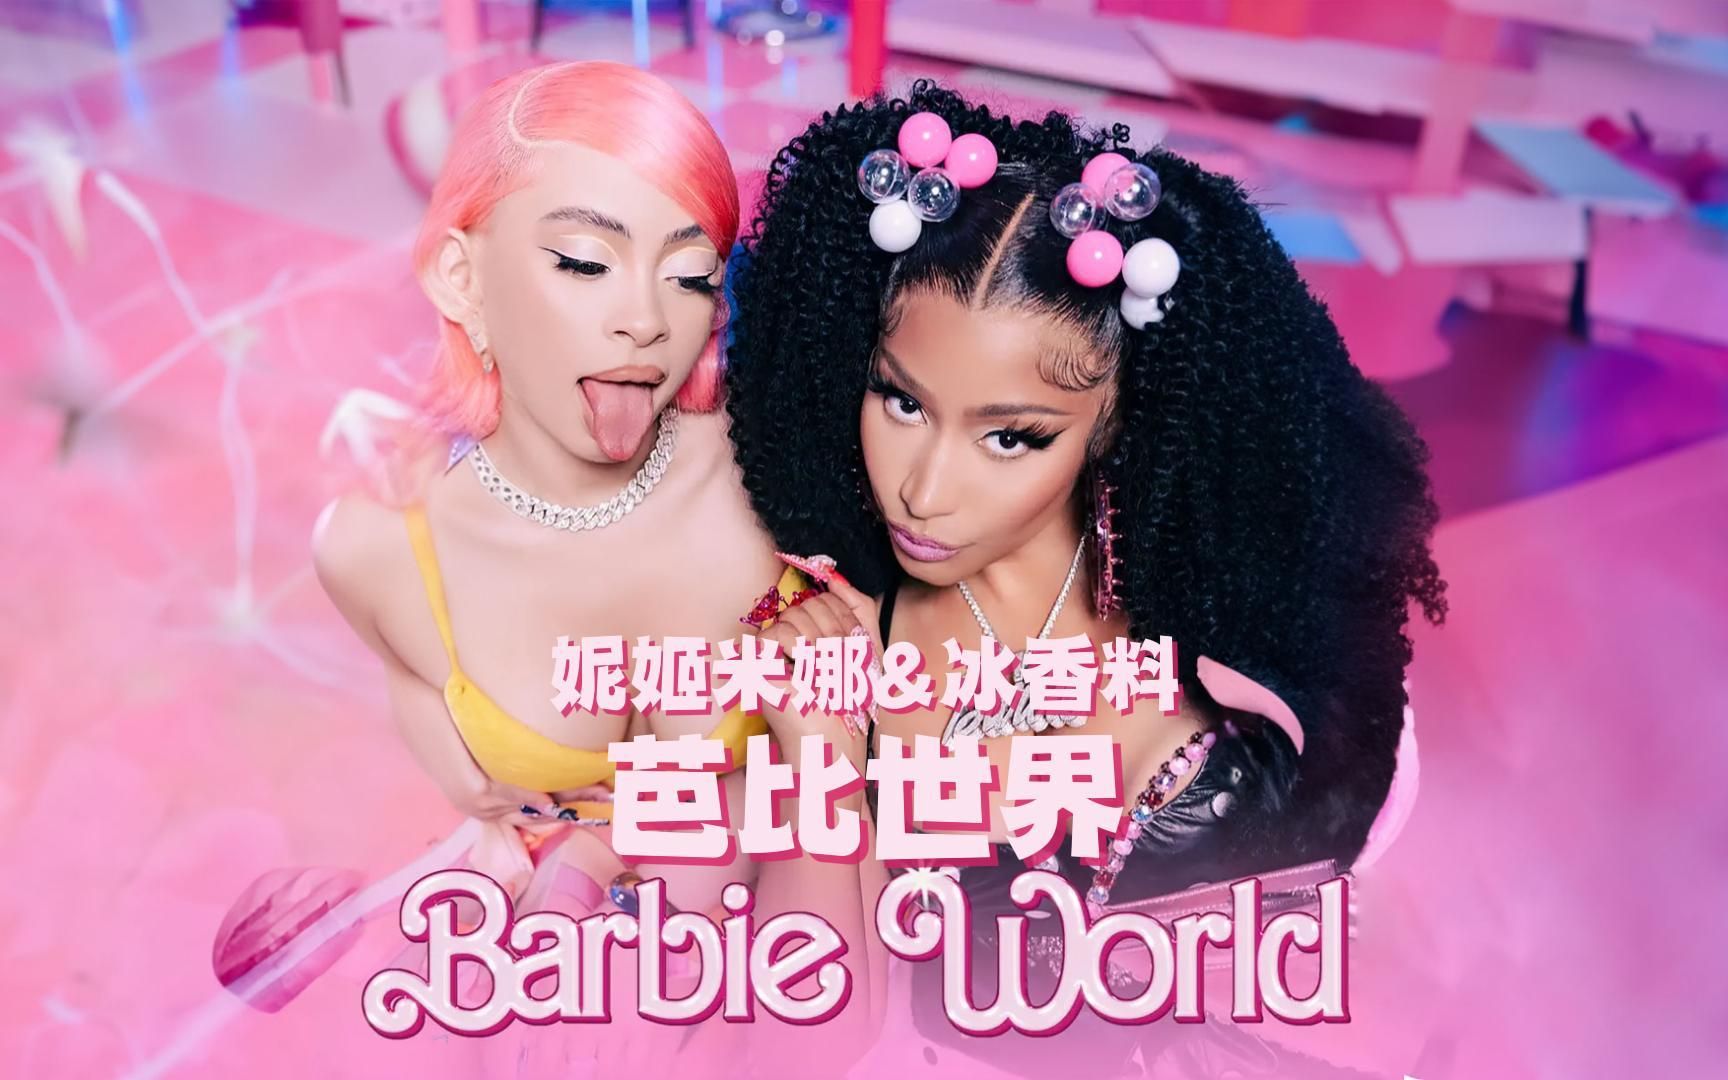 妮姬米娜 Nicki Minaj & Ice Spice & Aqua 水叮当 - Barbie World 芭比世界 中文特效字幕MV